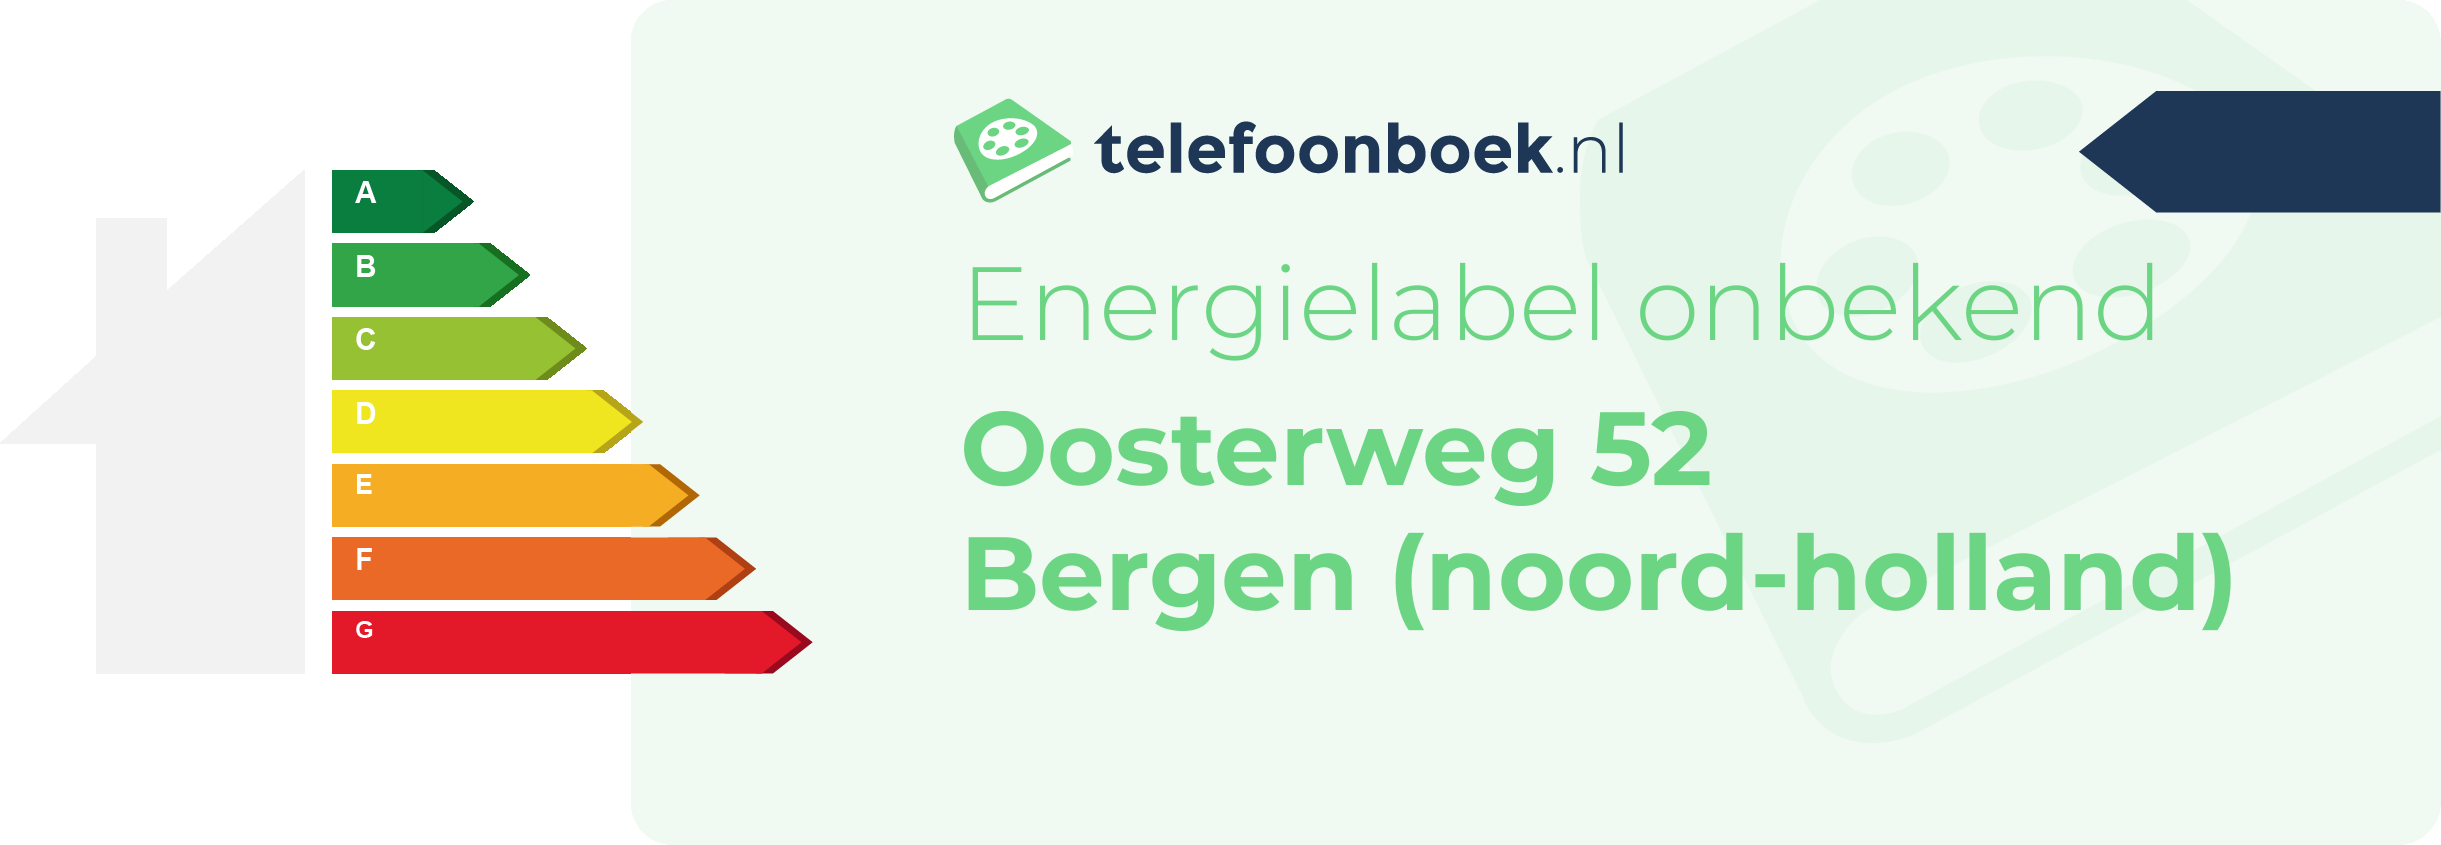 Energielabel Oosterweg 52 Bergen (Noord-Holland)